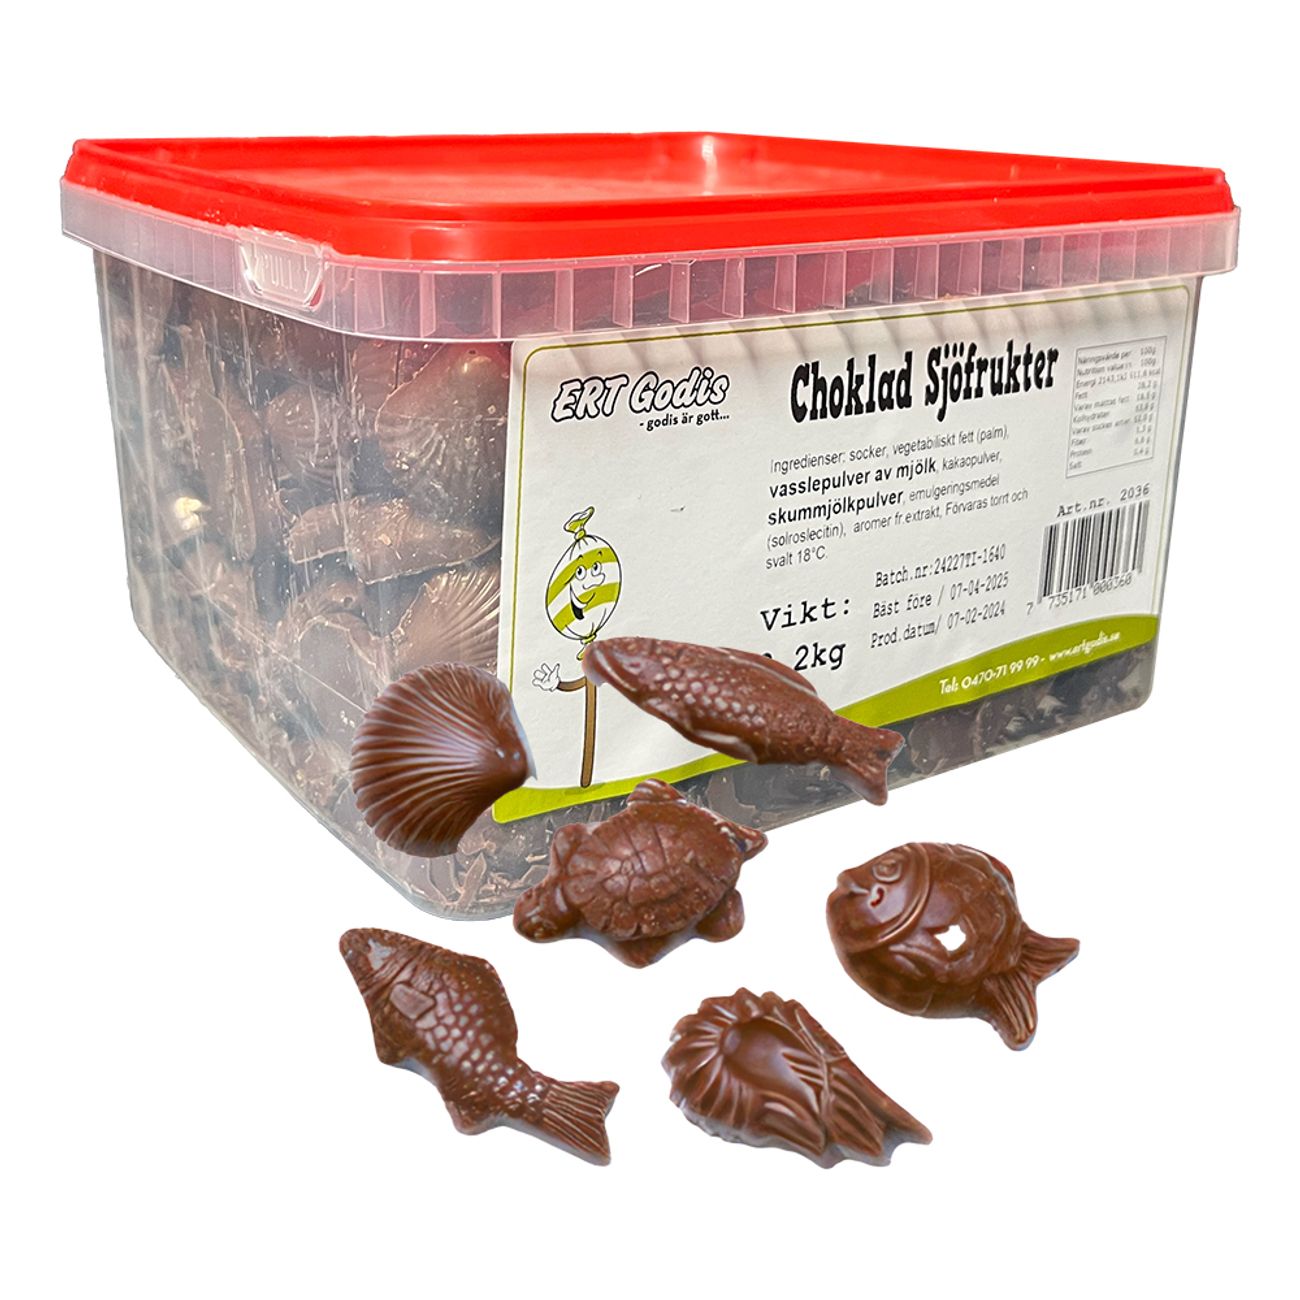 chokladsjofrukter-storpack-96377-2